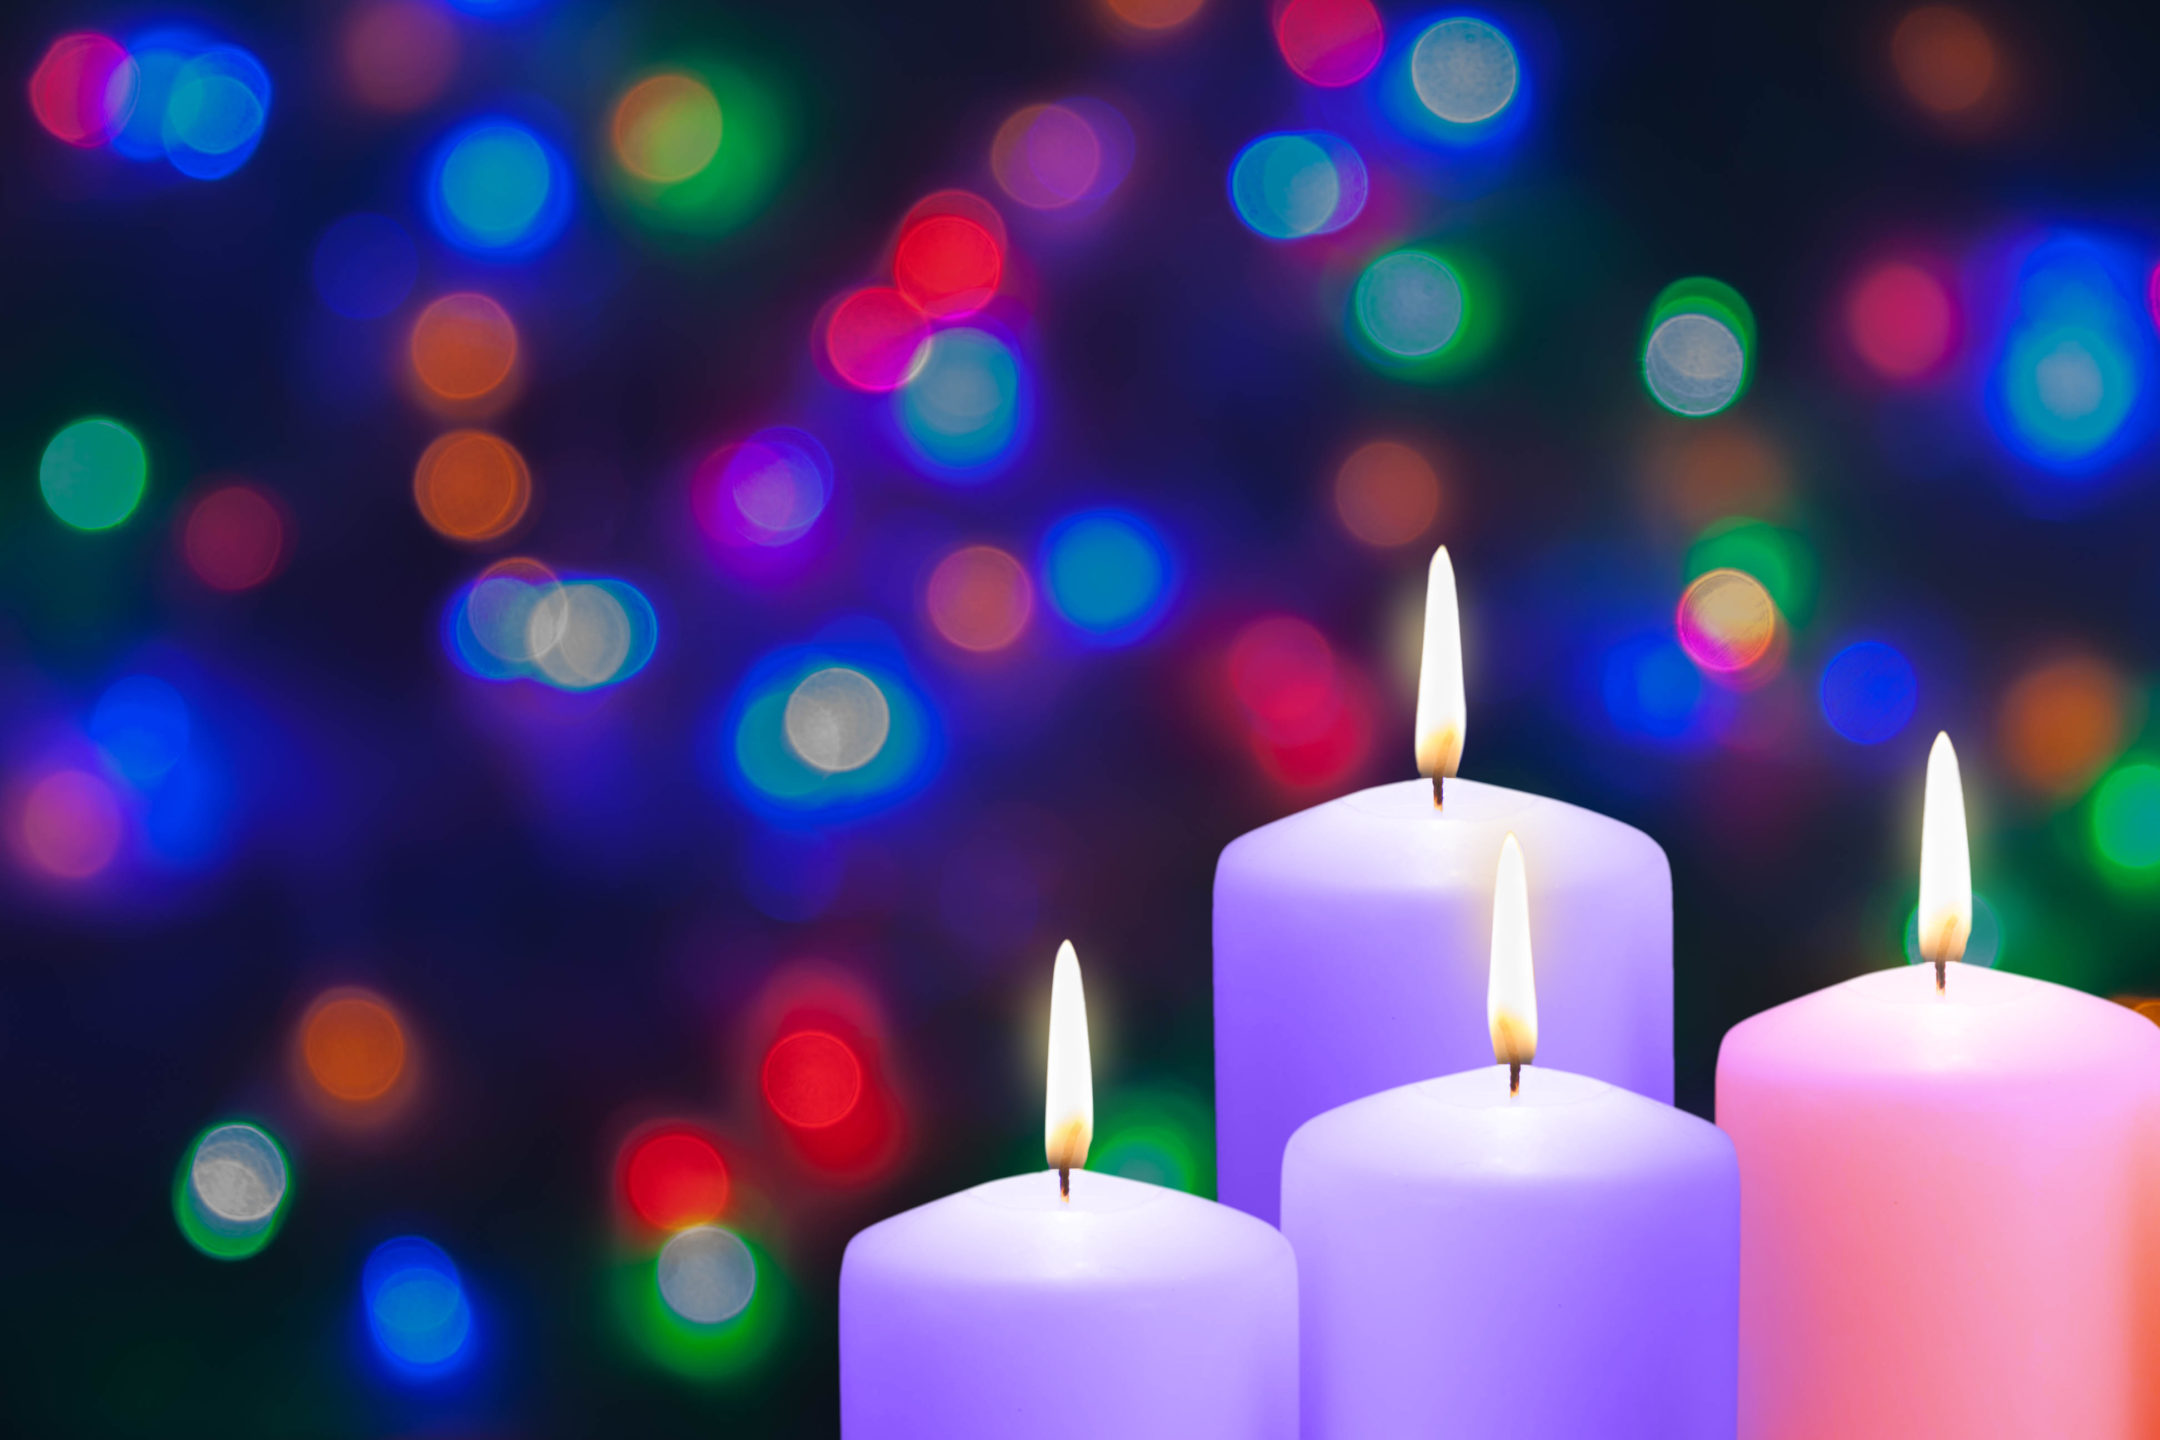 Christmas candles and lights